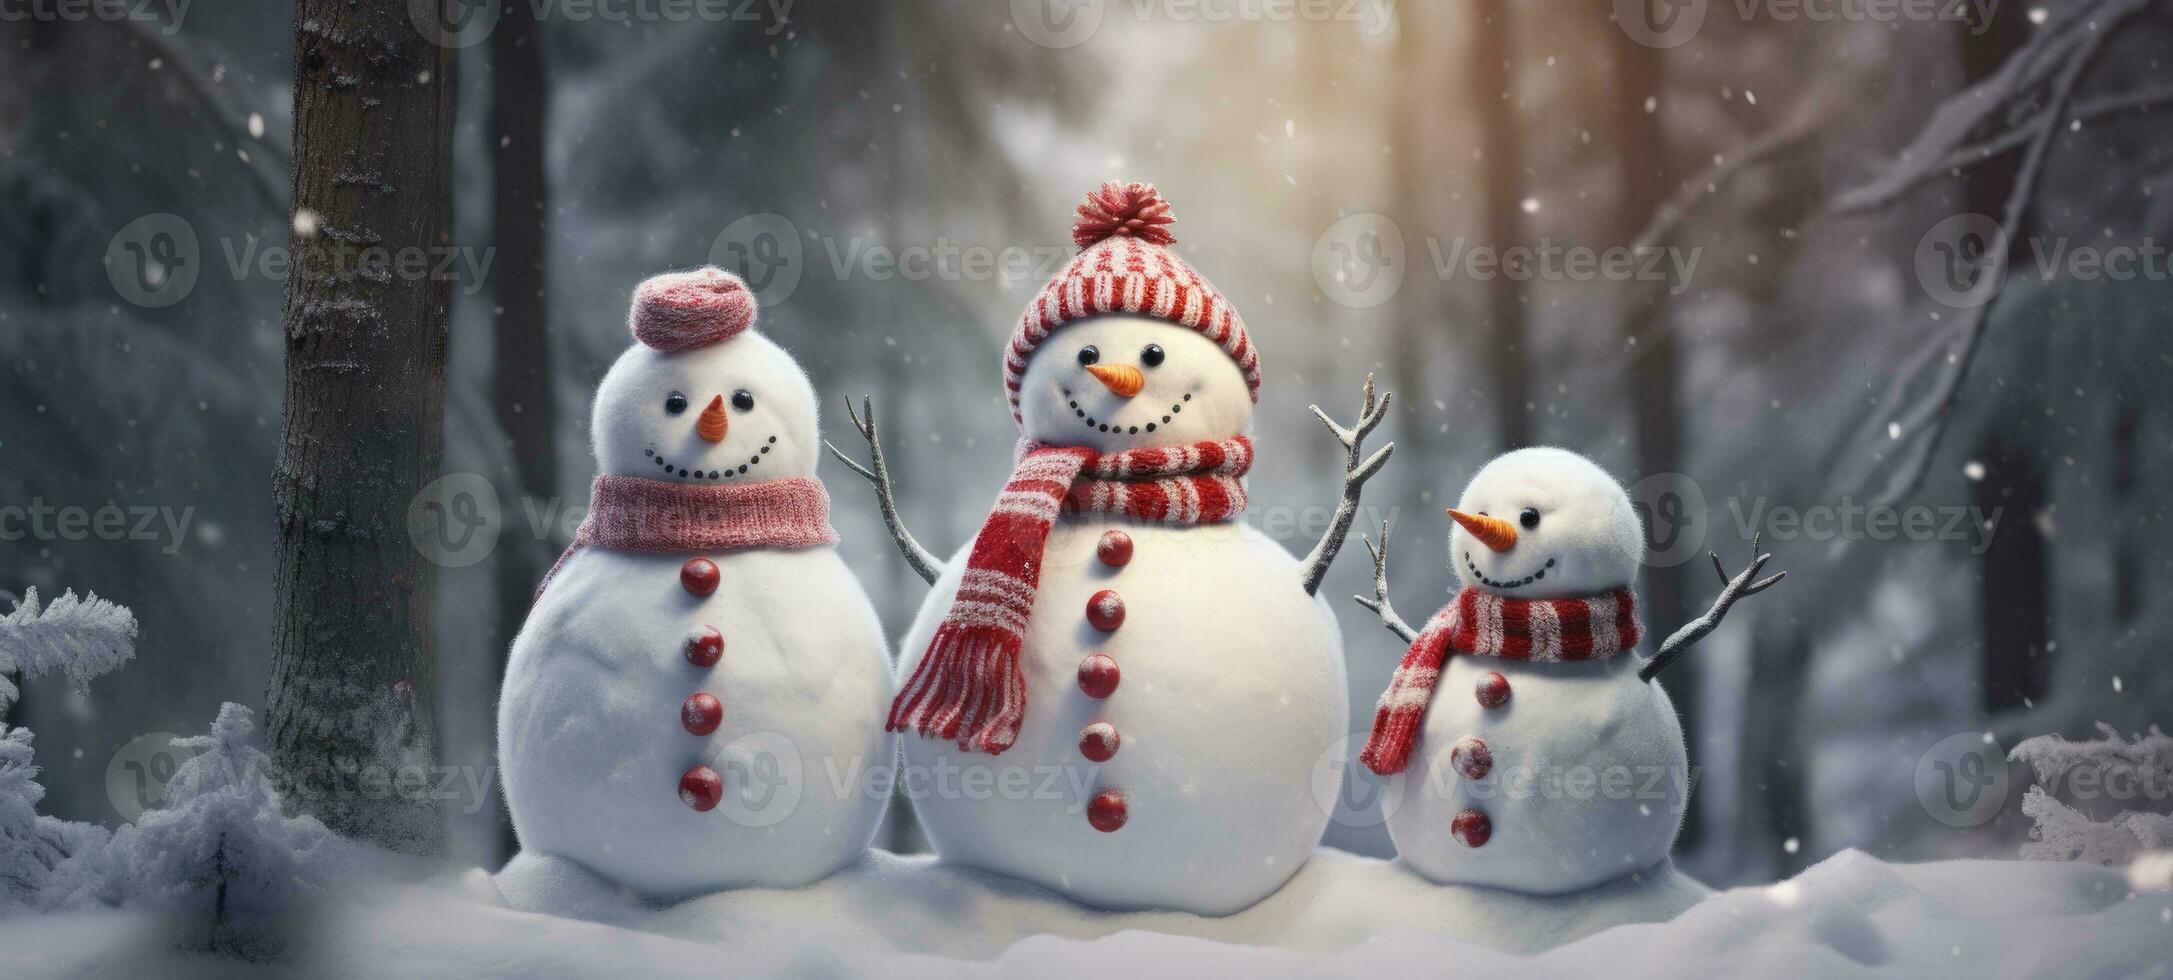 familj snögubbe med scarf i snö skog hälsning kort xmas jul foto